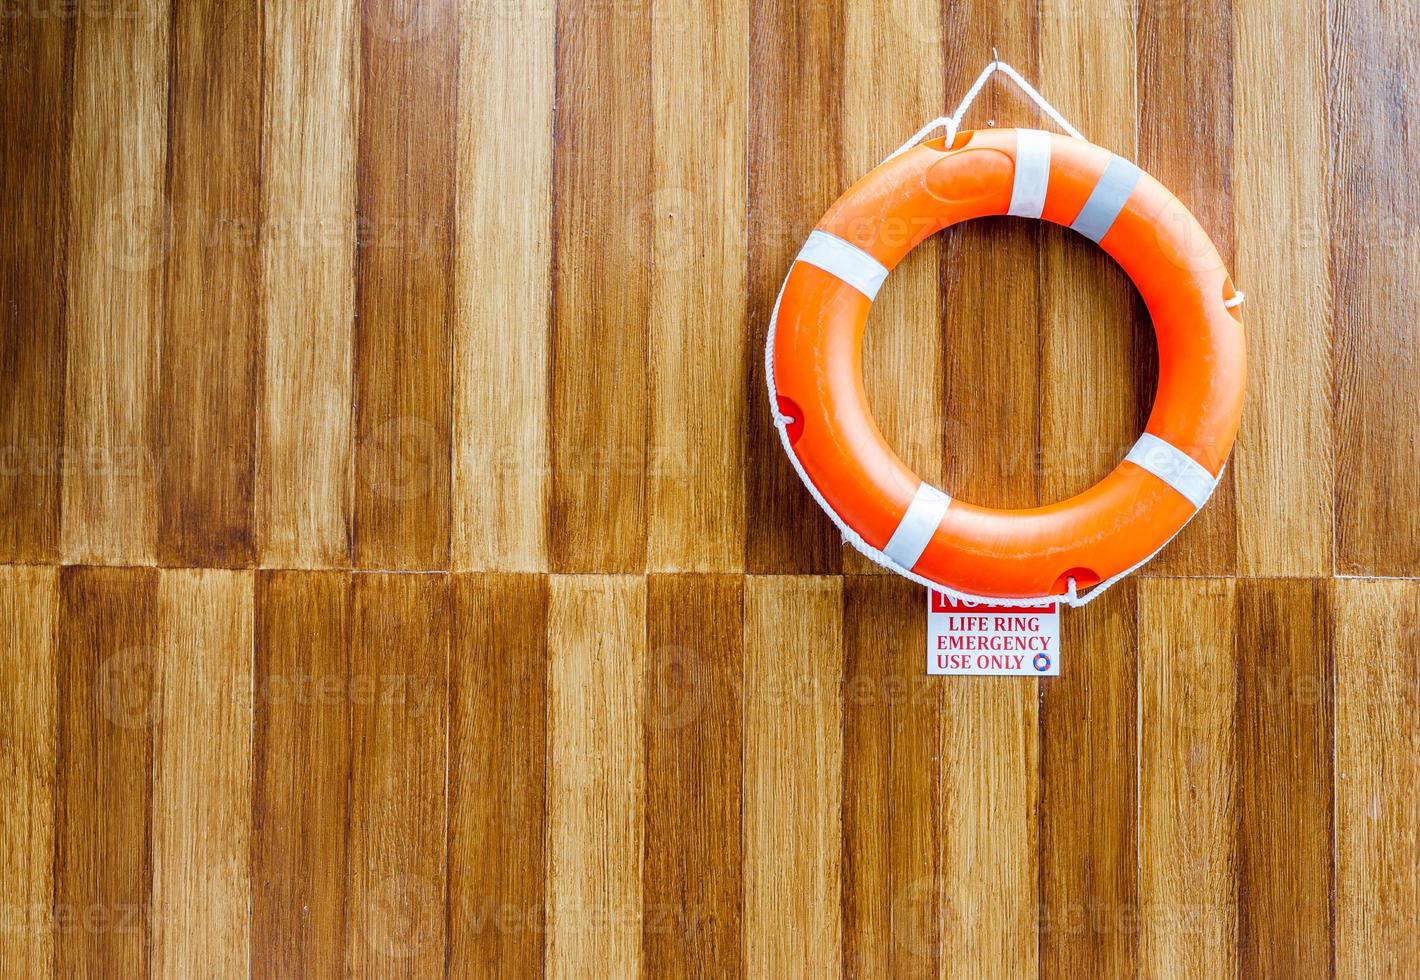 The orange life buoy on wood wall background photo